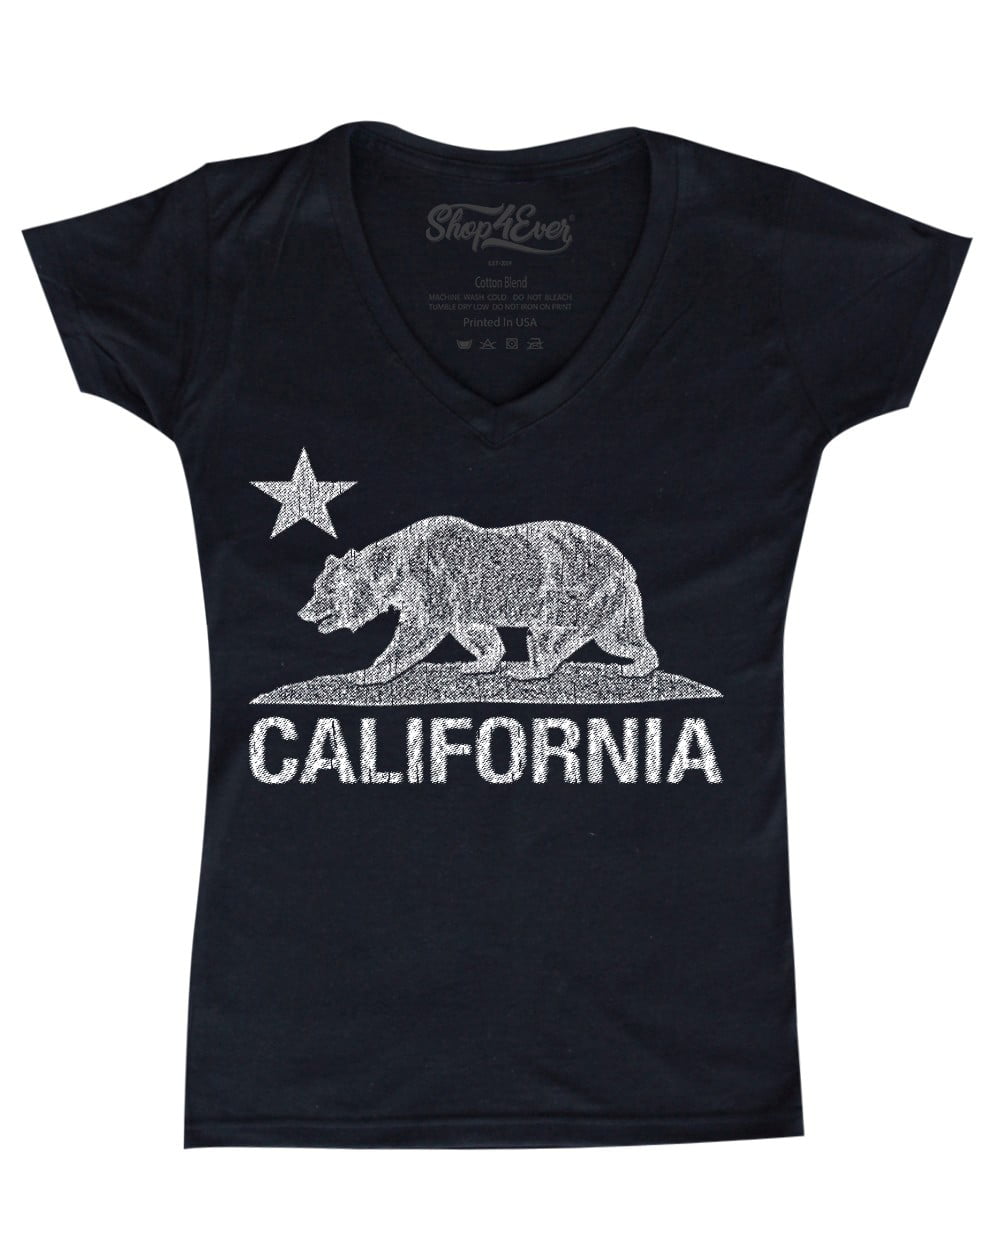 Футболка California. Футболка California West Coast. Рубашка Калифорния. Футболка Калифорния с медведем. Do you ever shop